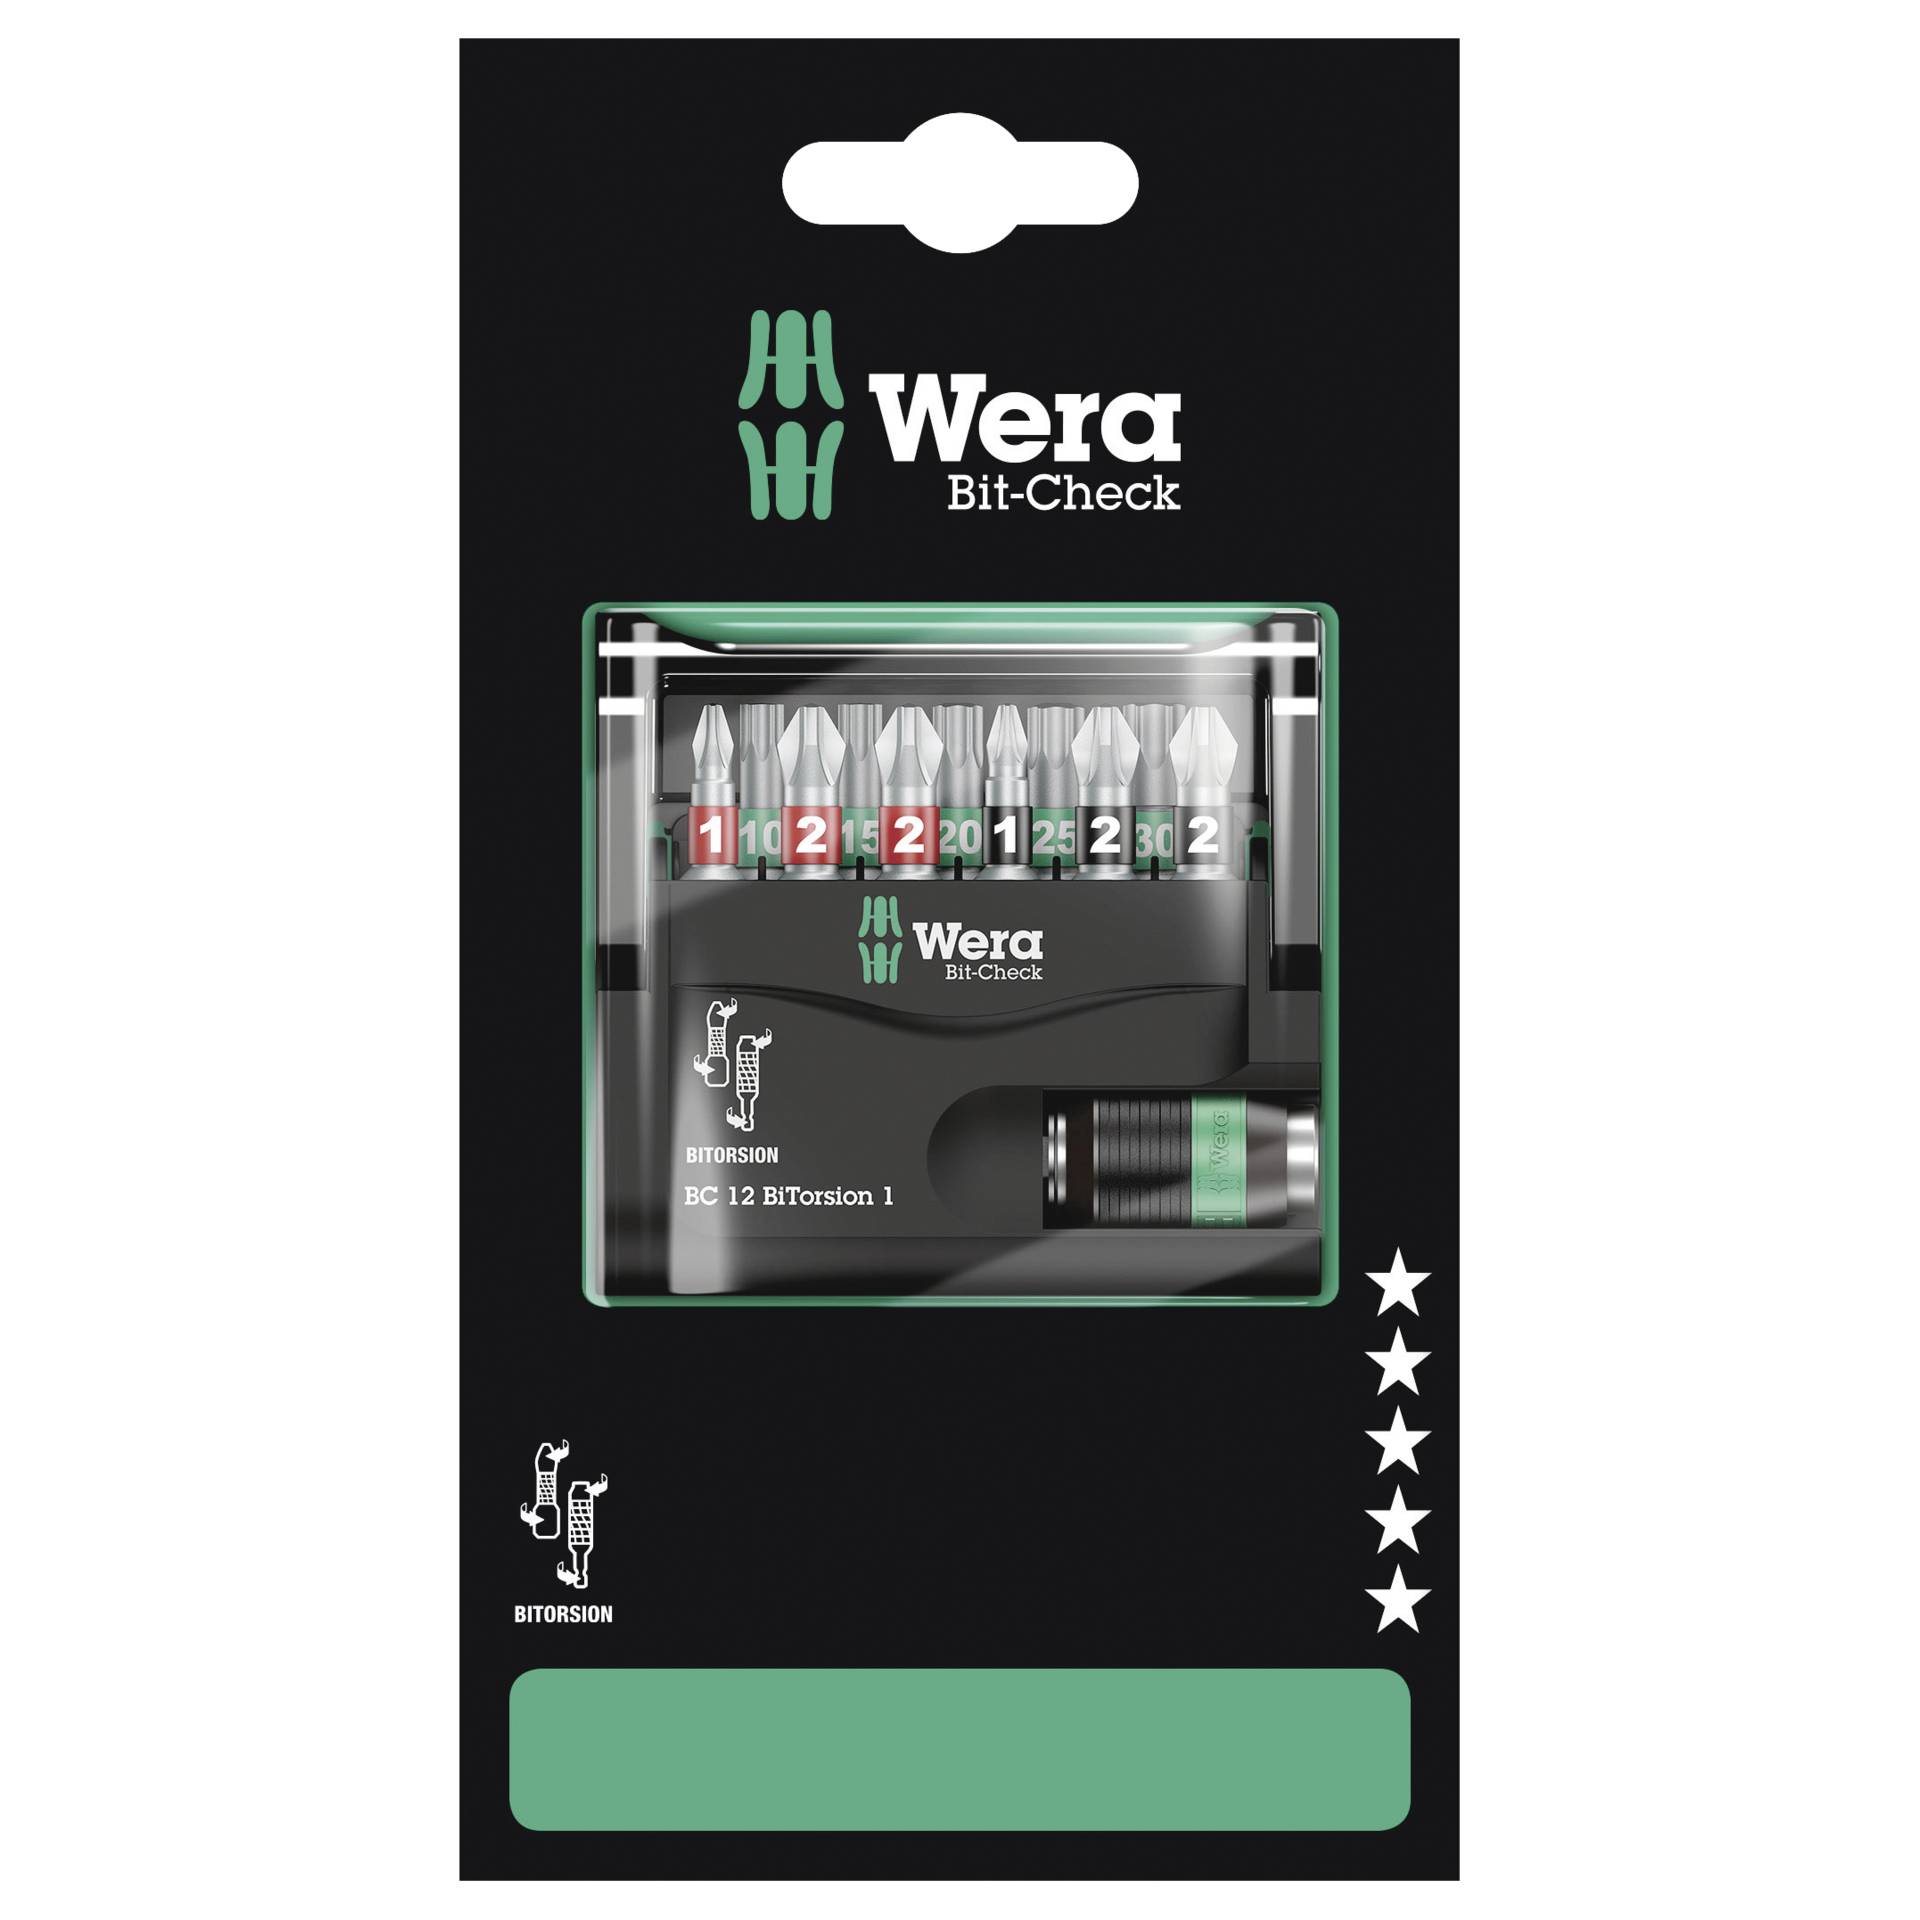 Wera Bit-Check 12 BiTorsion 1 SB Schraubenziehereinsatz 11 Stück(e)